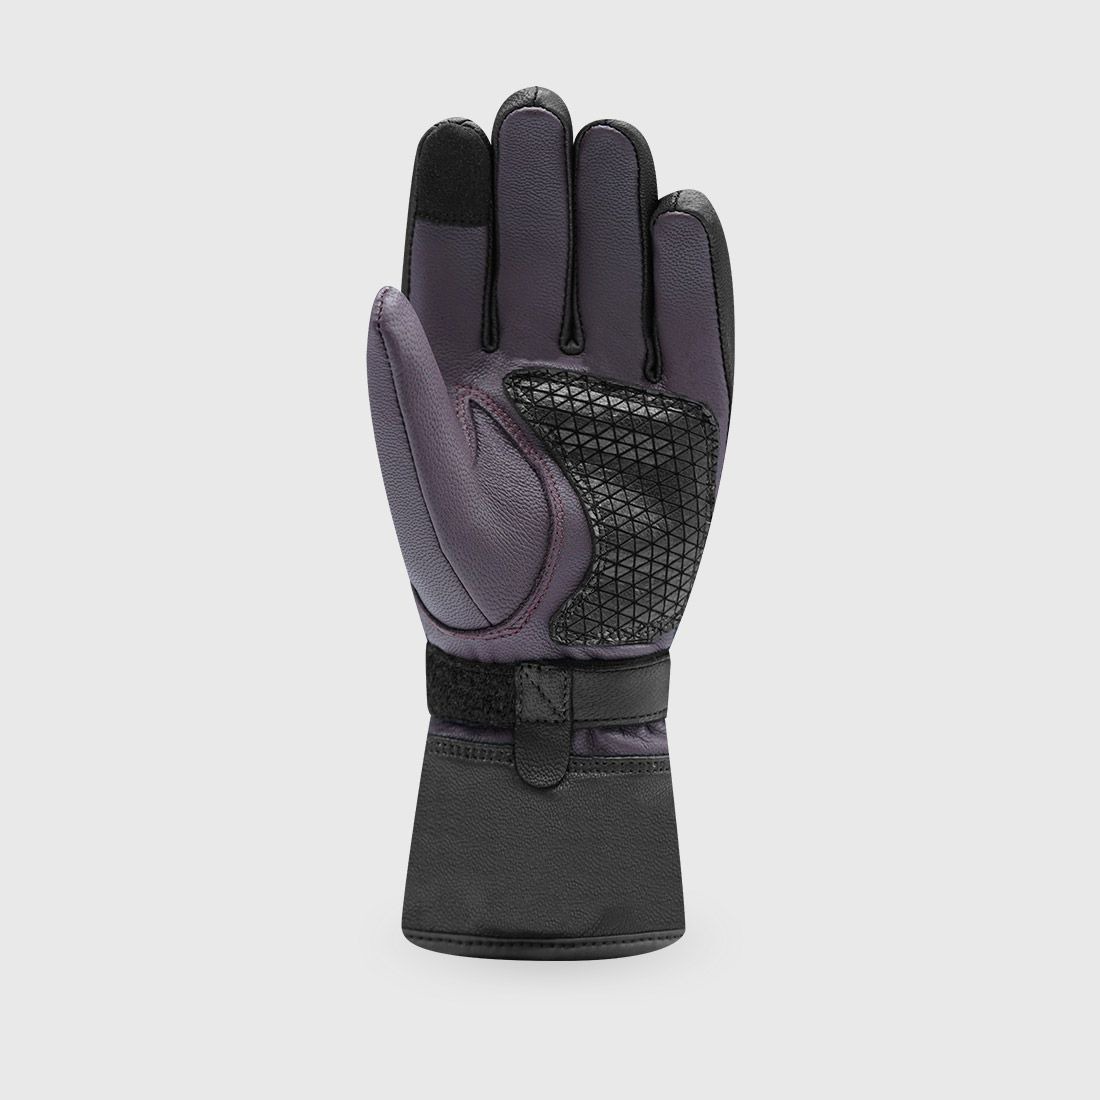 gloves BELLA WINTER 3, RACER, women (black/bordeaux)